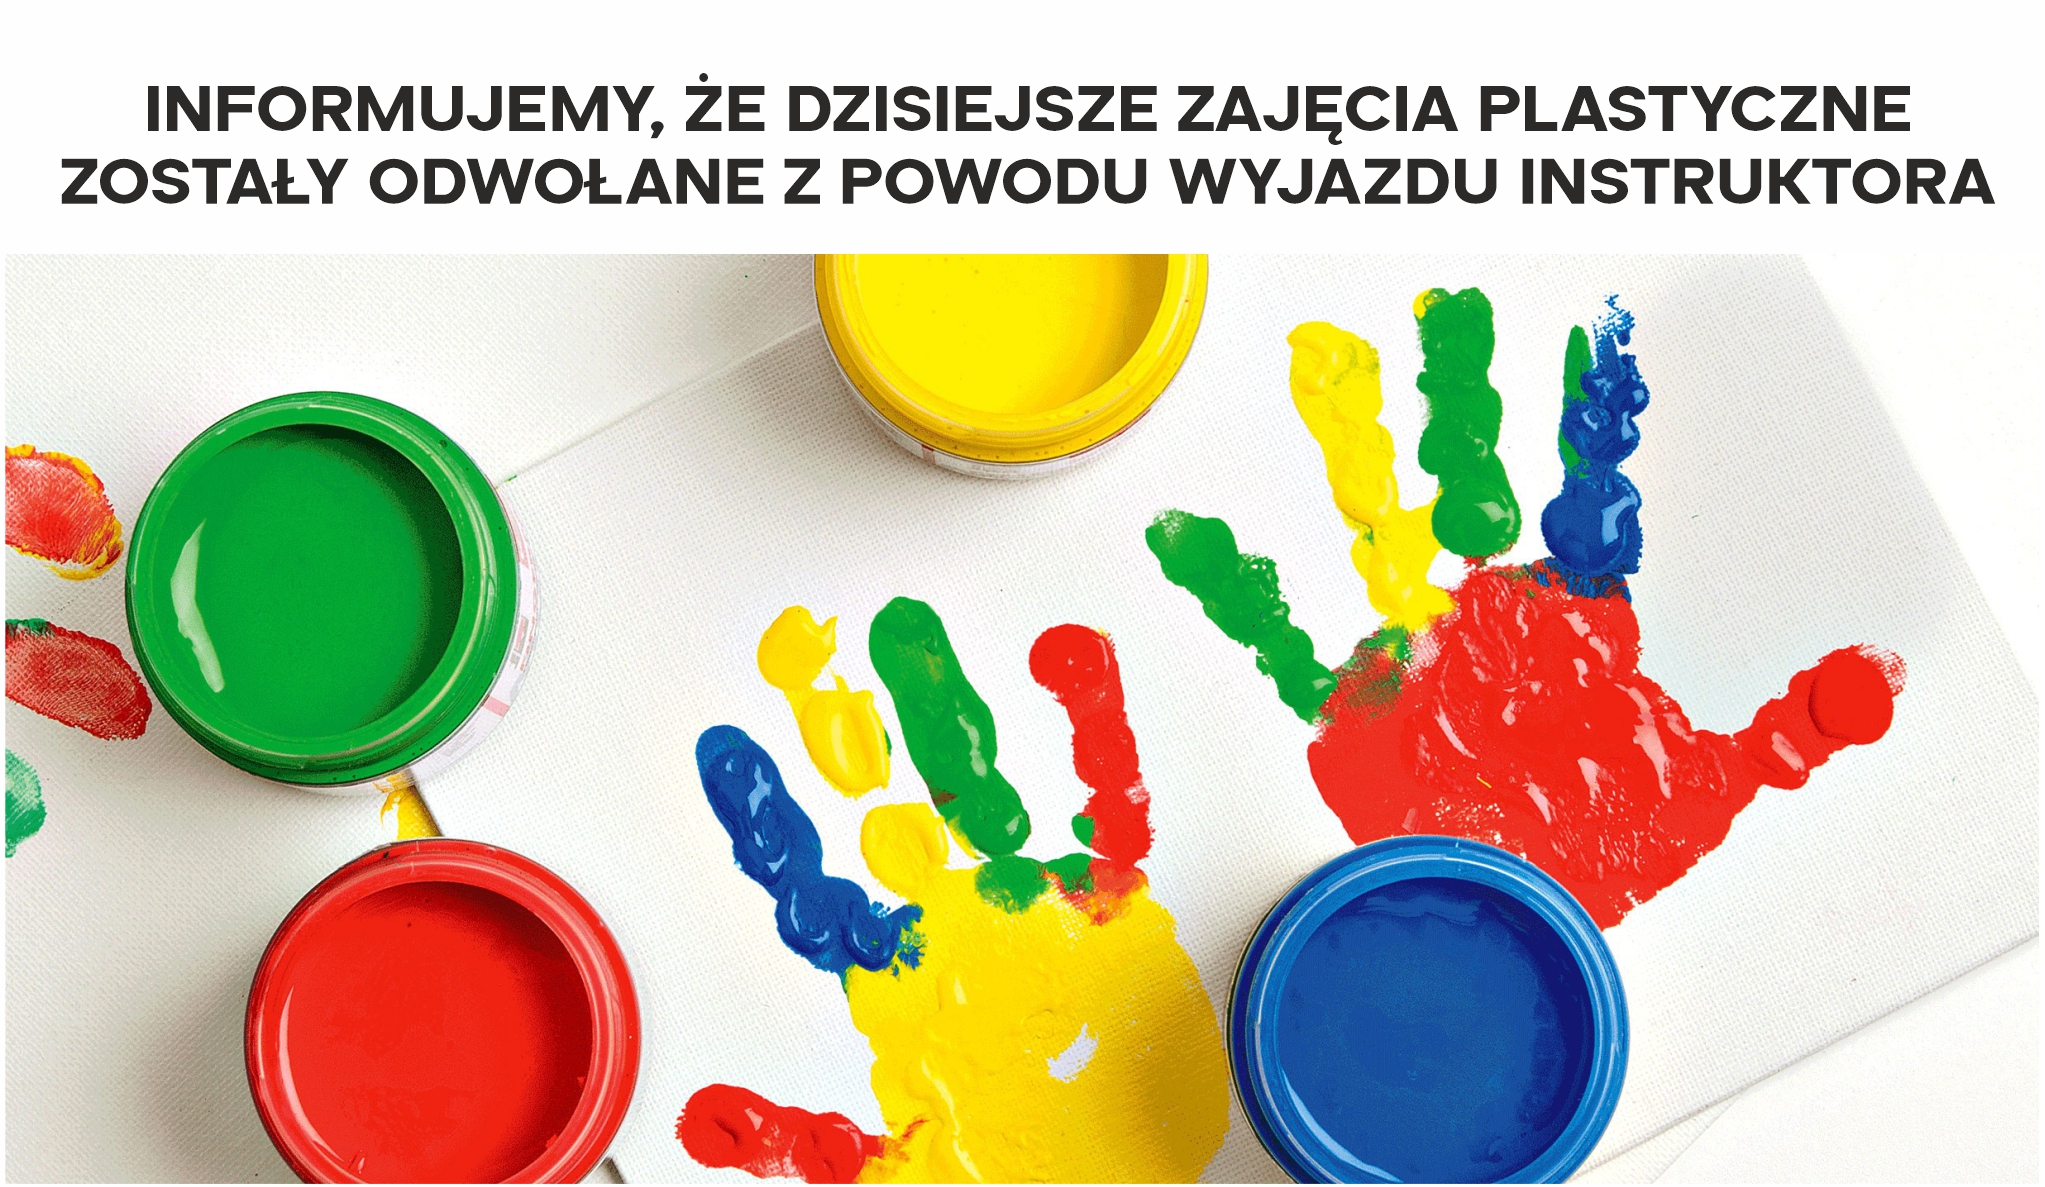 Plakat informujący o odwołaniu zajęć plastycznych. Widnieje na nim zdjęcie kolorowych farb i odciśniętych na kartce dłoni.